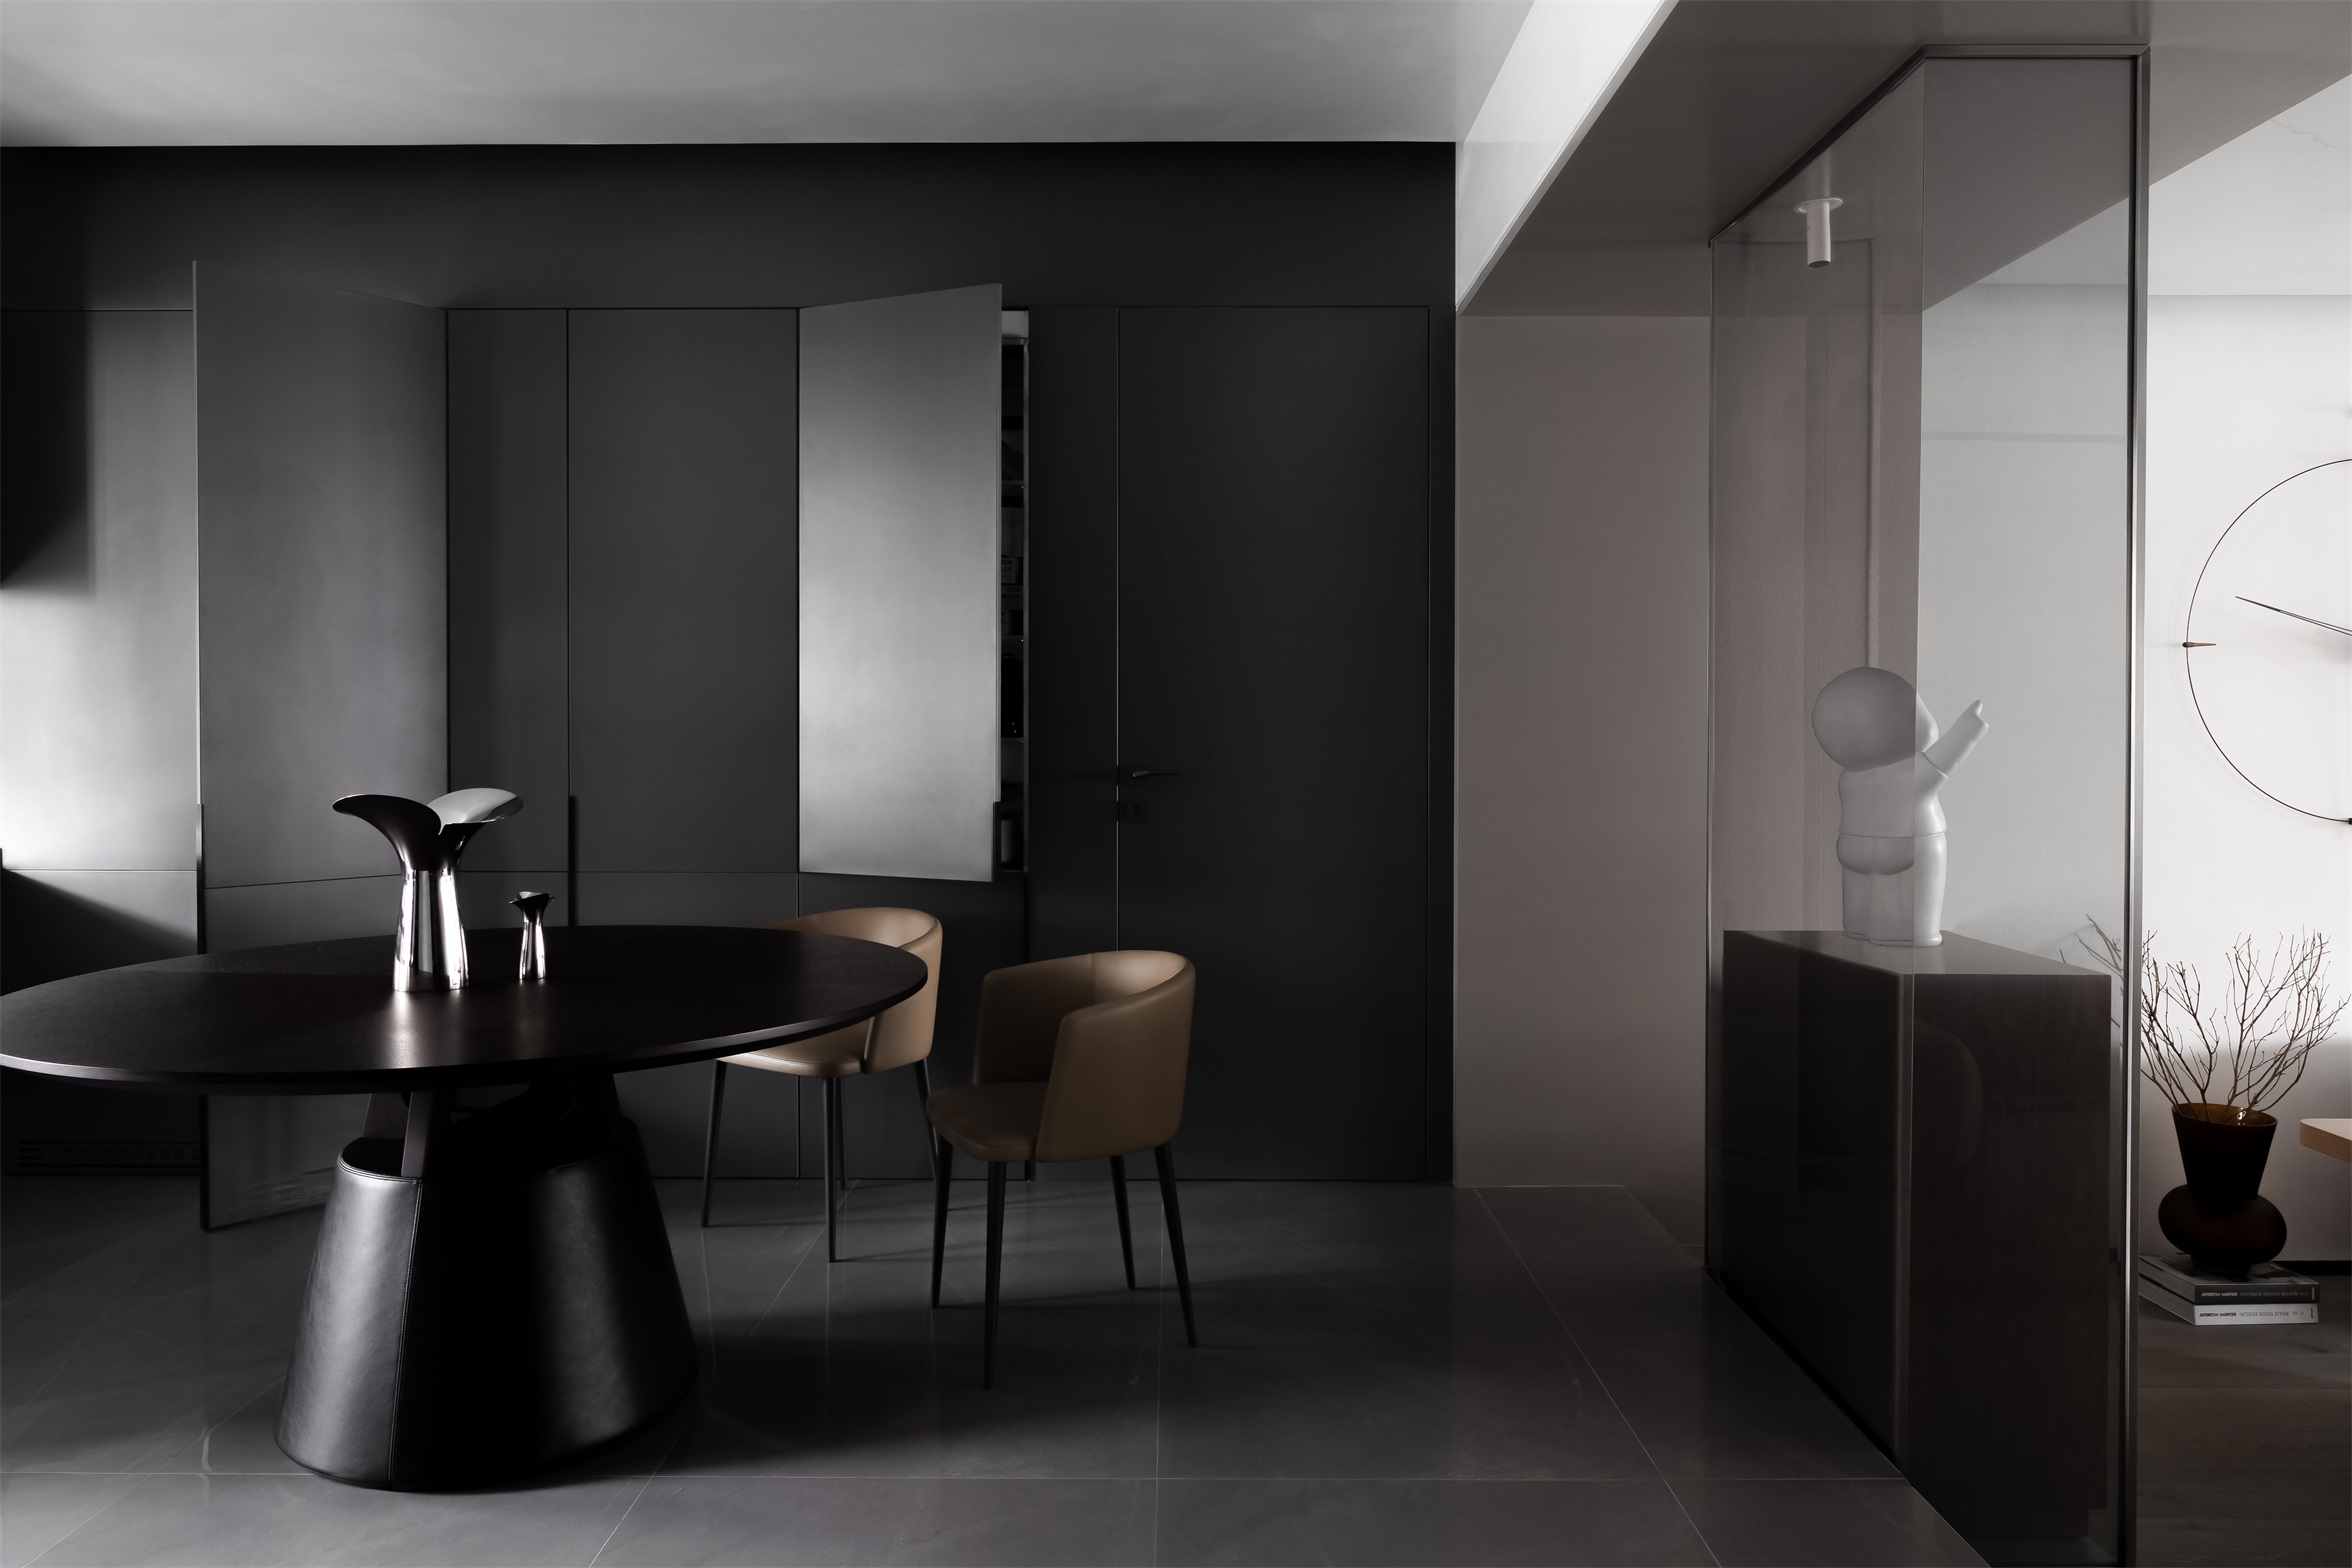 黑色背景墙搭配褐色餐桌，餐厅空间带来一种简约舒适而端庄的氛围。